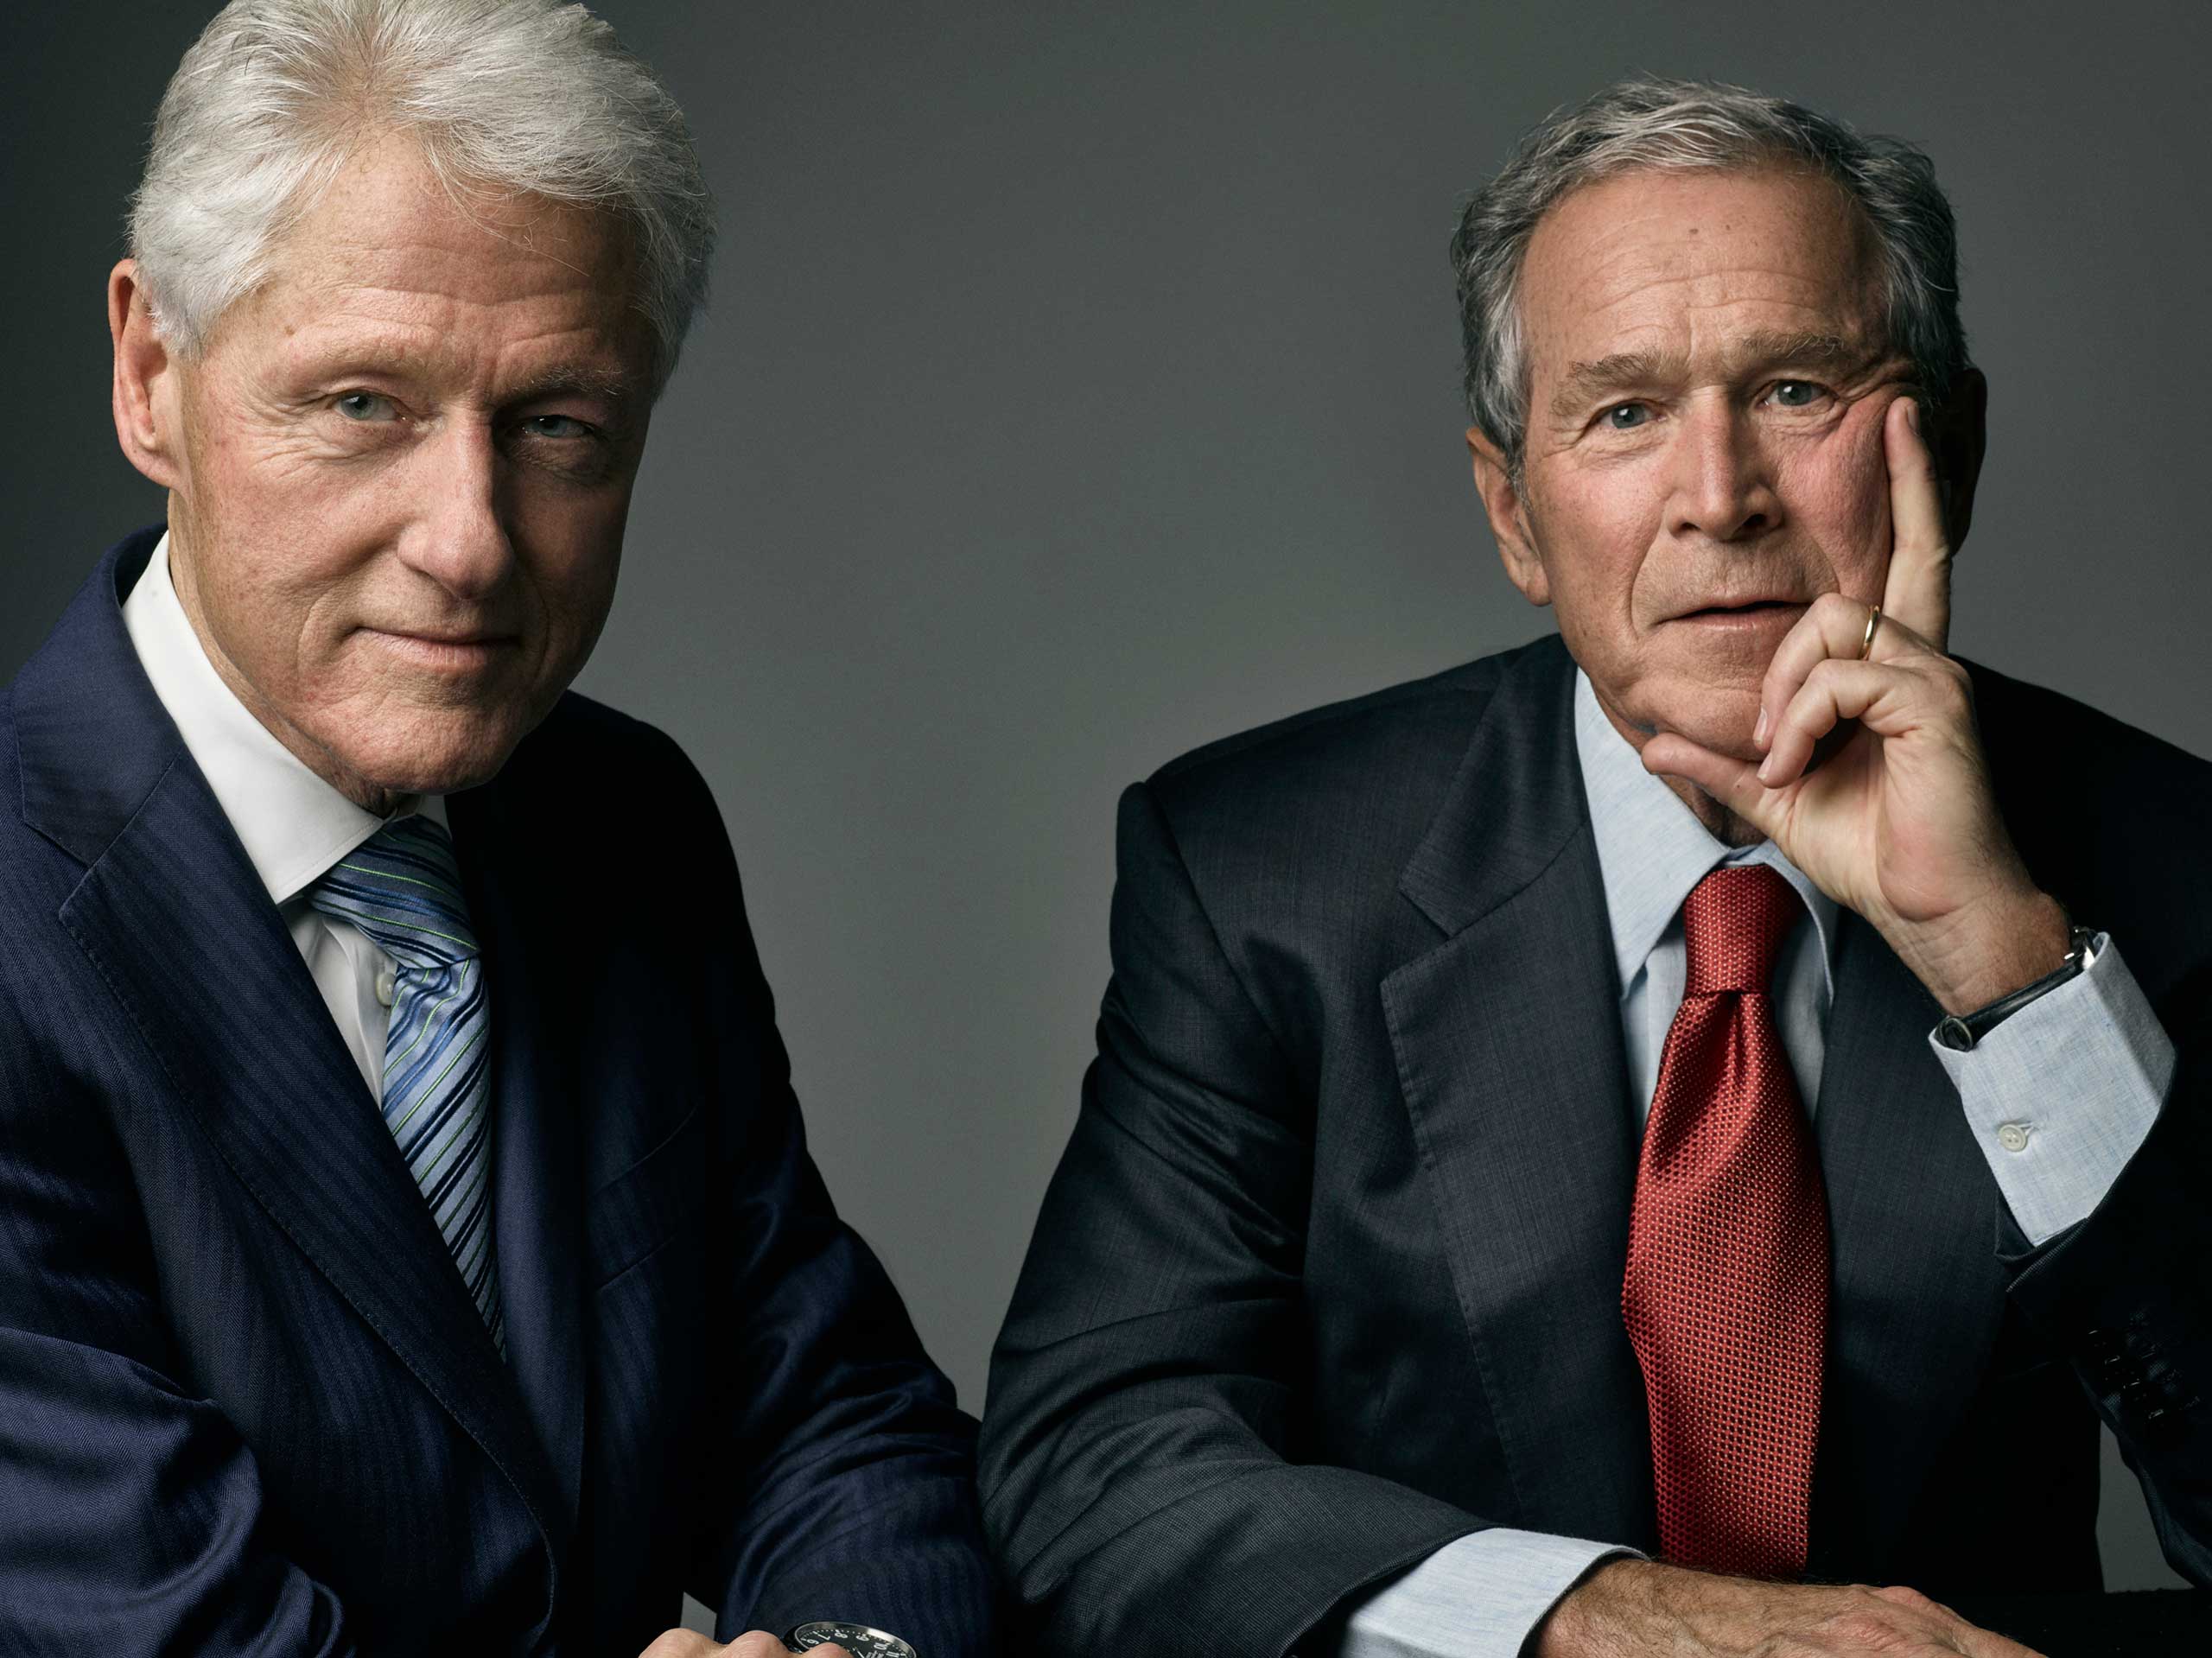 Former presidents Bill Clinton and George W. Bush